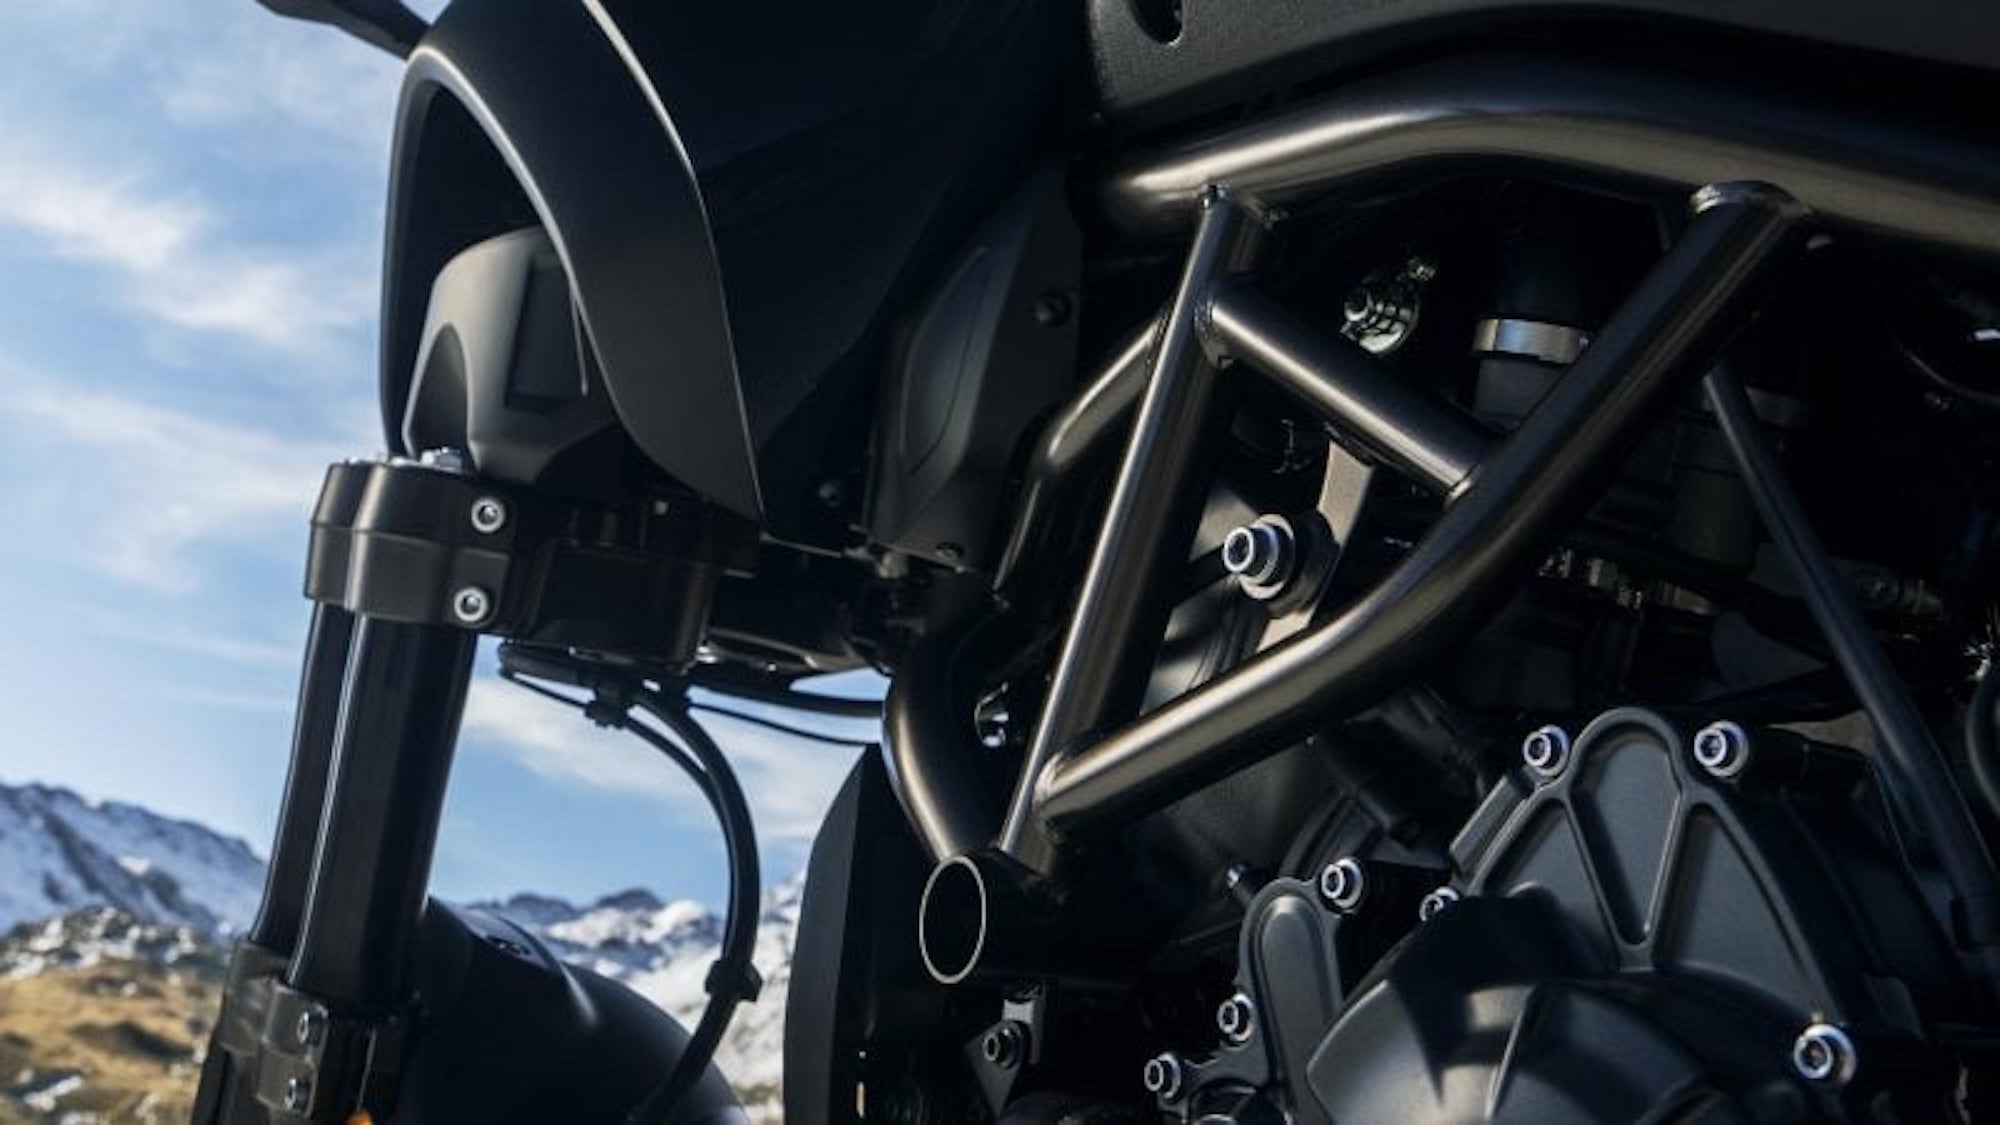 雅马哈的更新版Niken GT，它配备了更新的发动机，以及提升功能，更新的座椅/框架，新的电子设备，和一些减重-所有这些都是在2023年的时间。媒体来源Motorcycle.com。